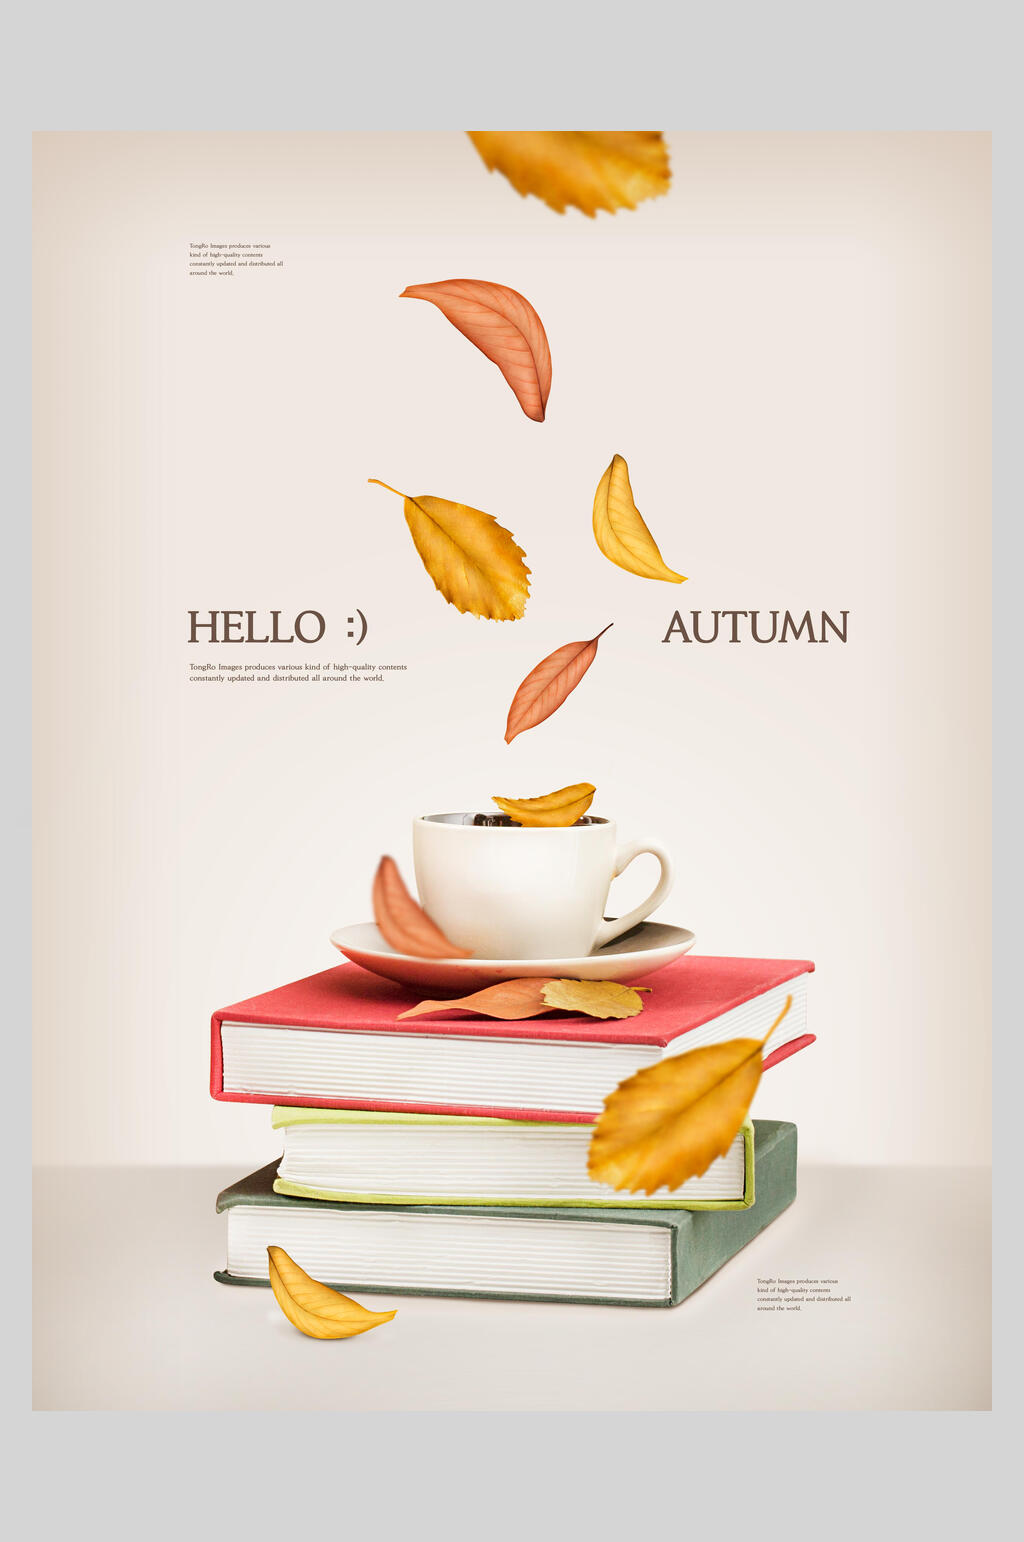 众图网独家提供书本秋季促销海报素材免费下载,本作品是由你好上传的